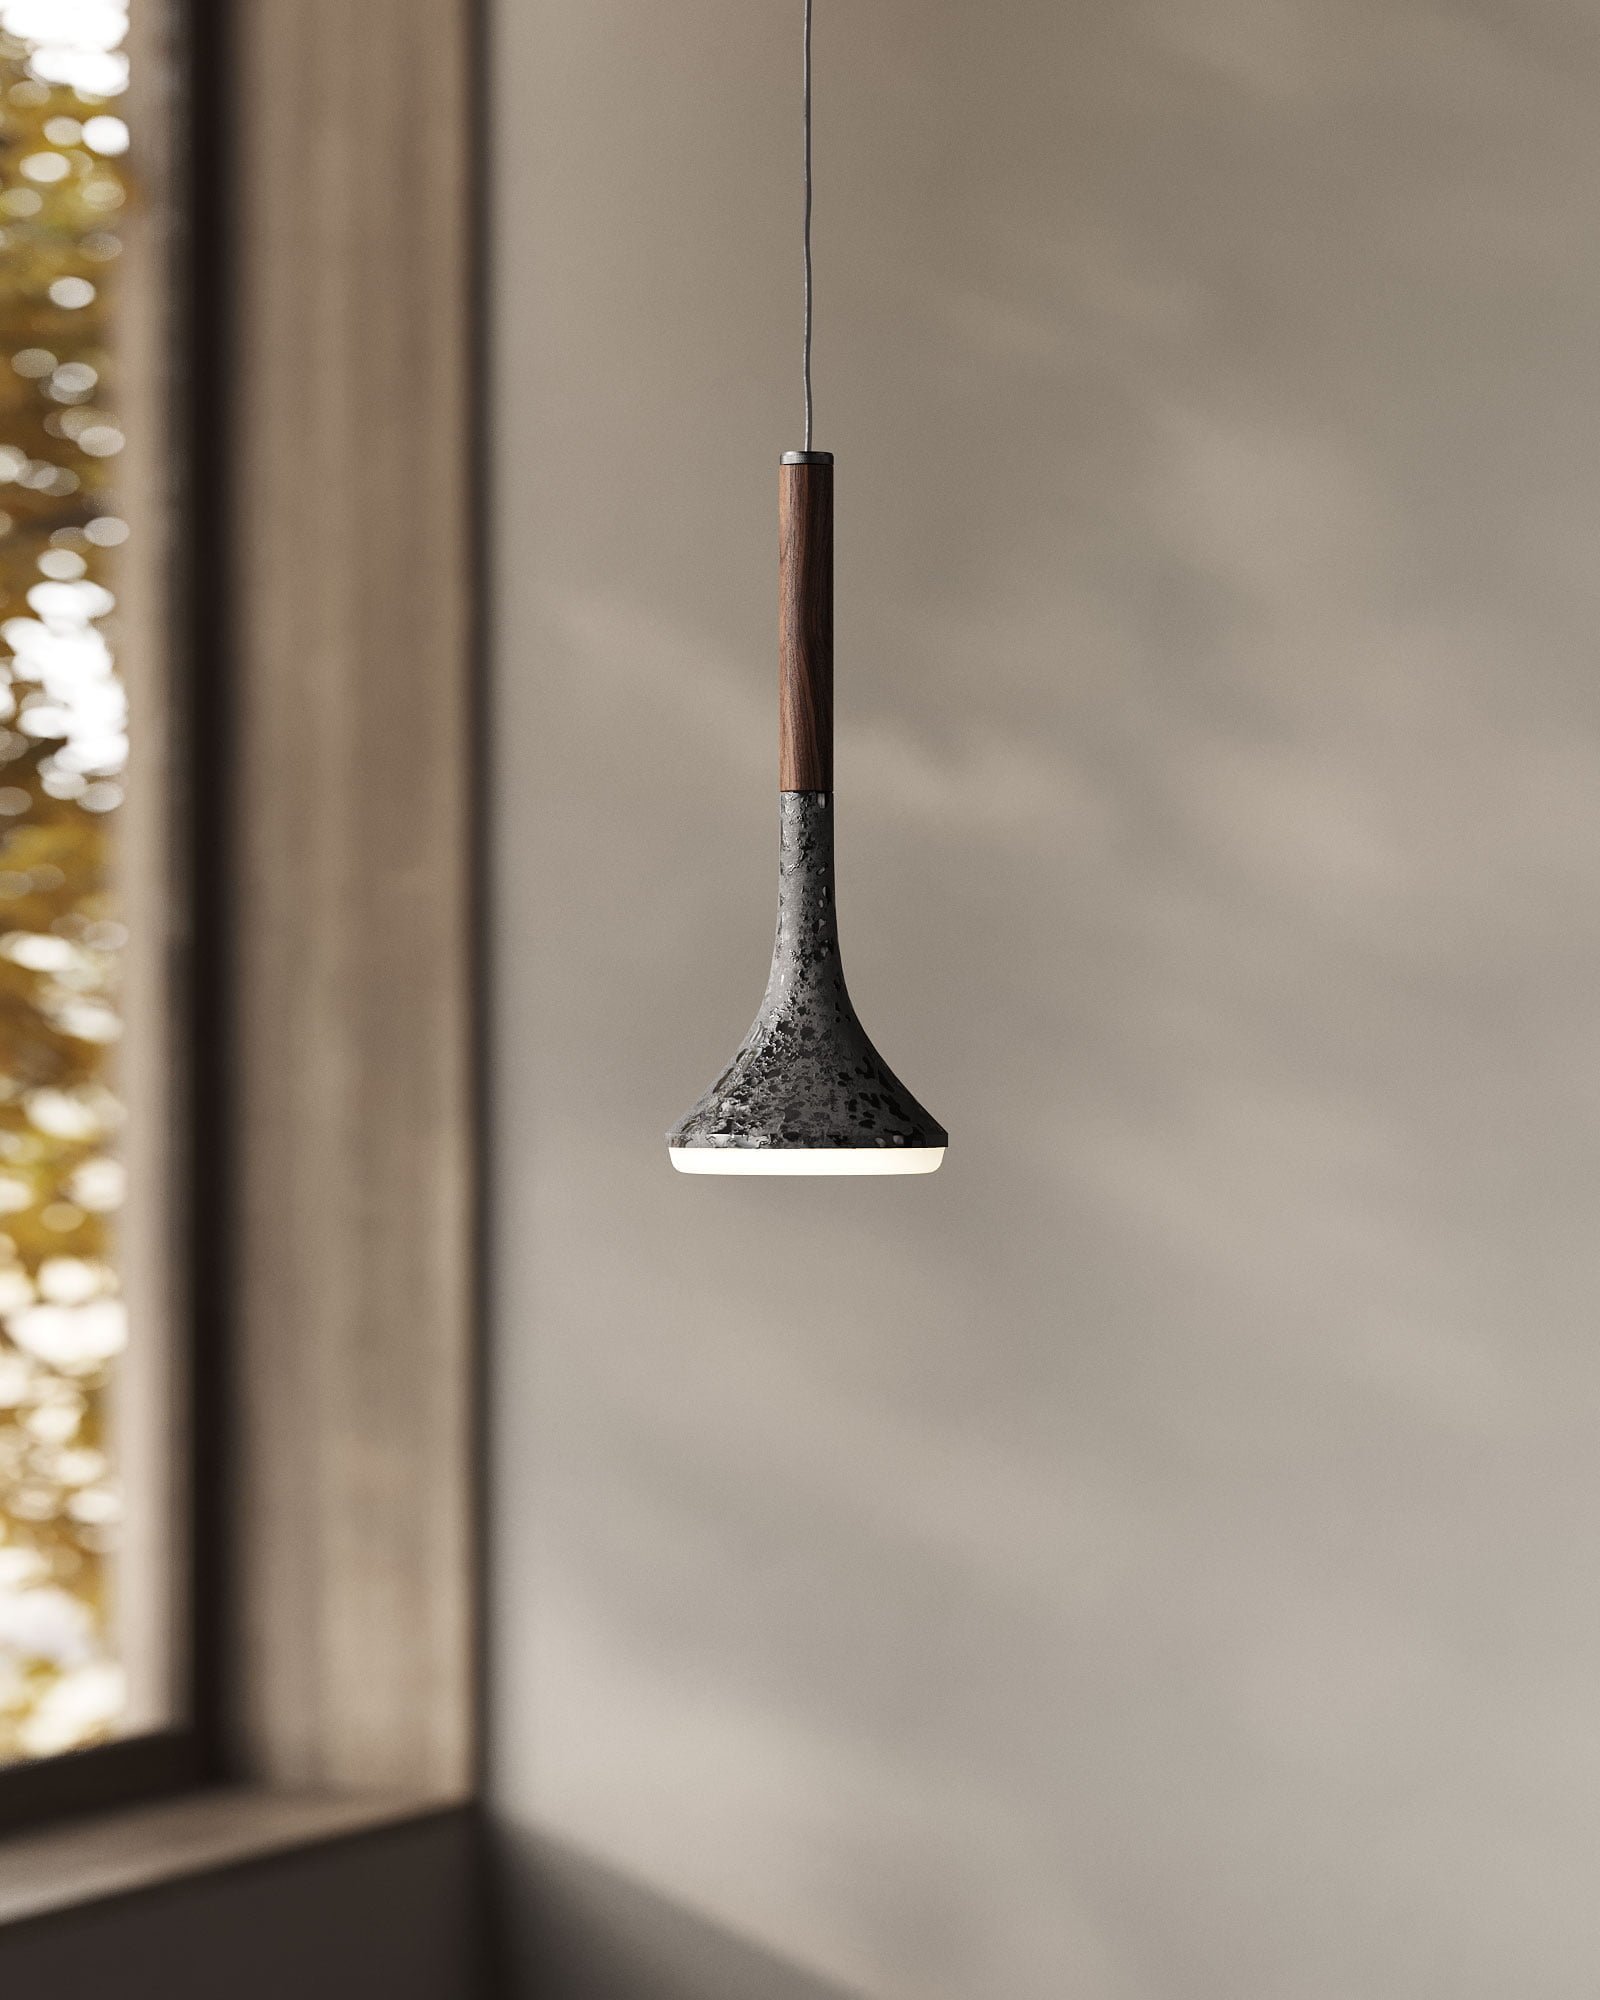 Wood pendant led lamp designed by Bandido